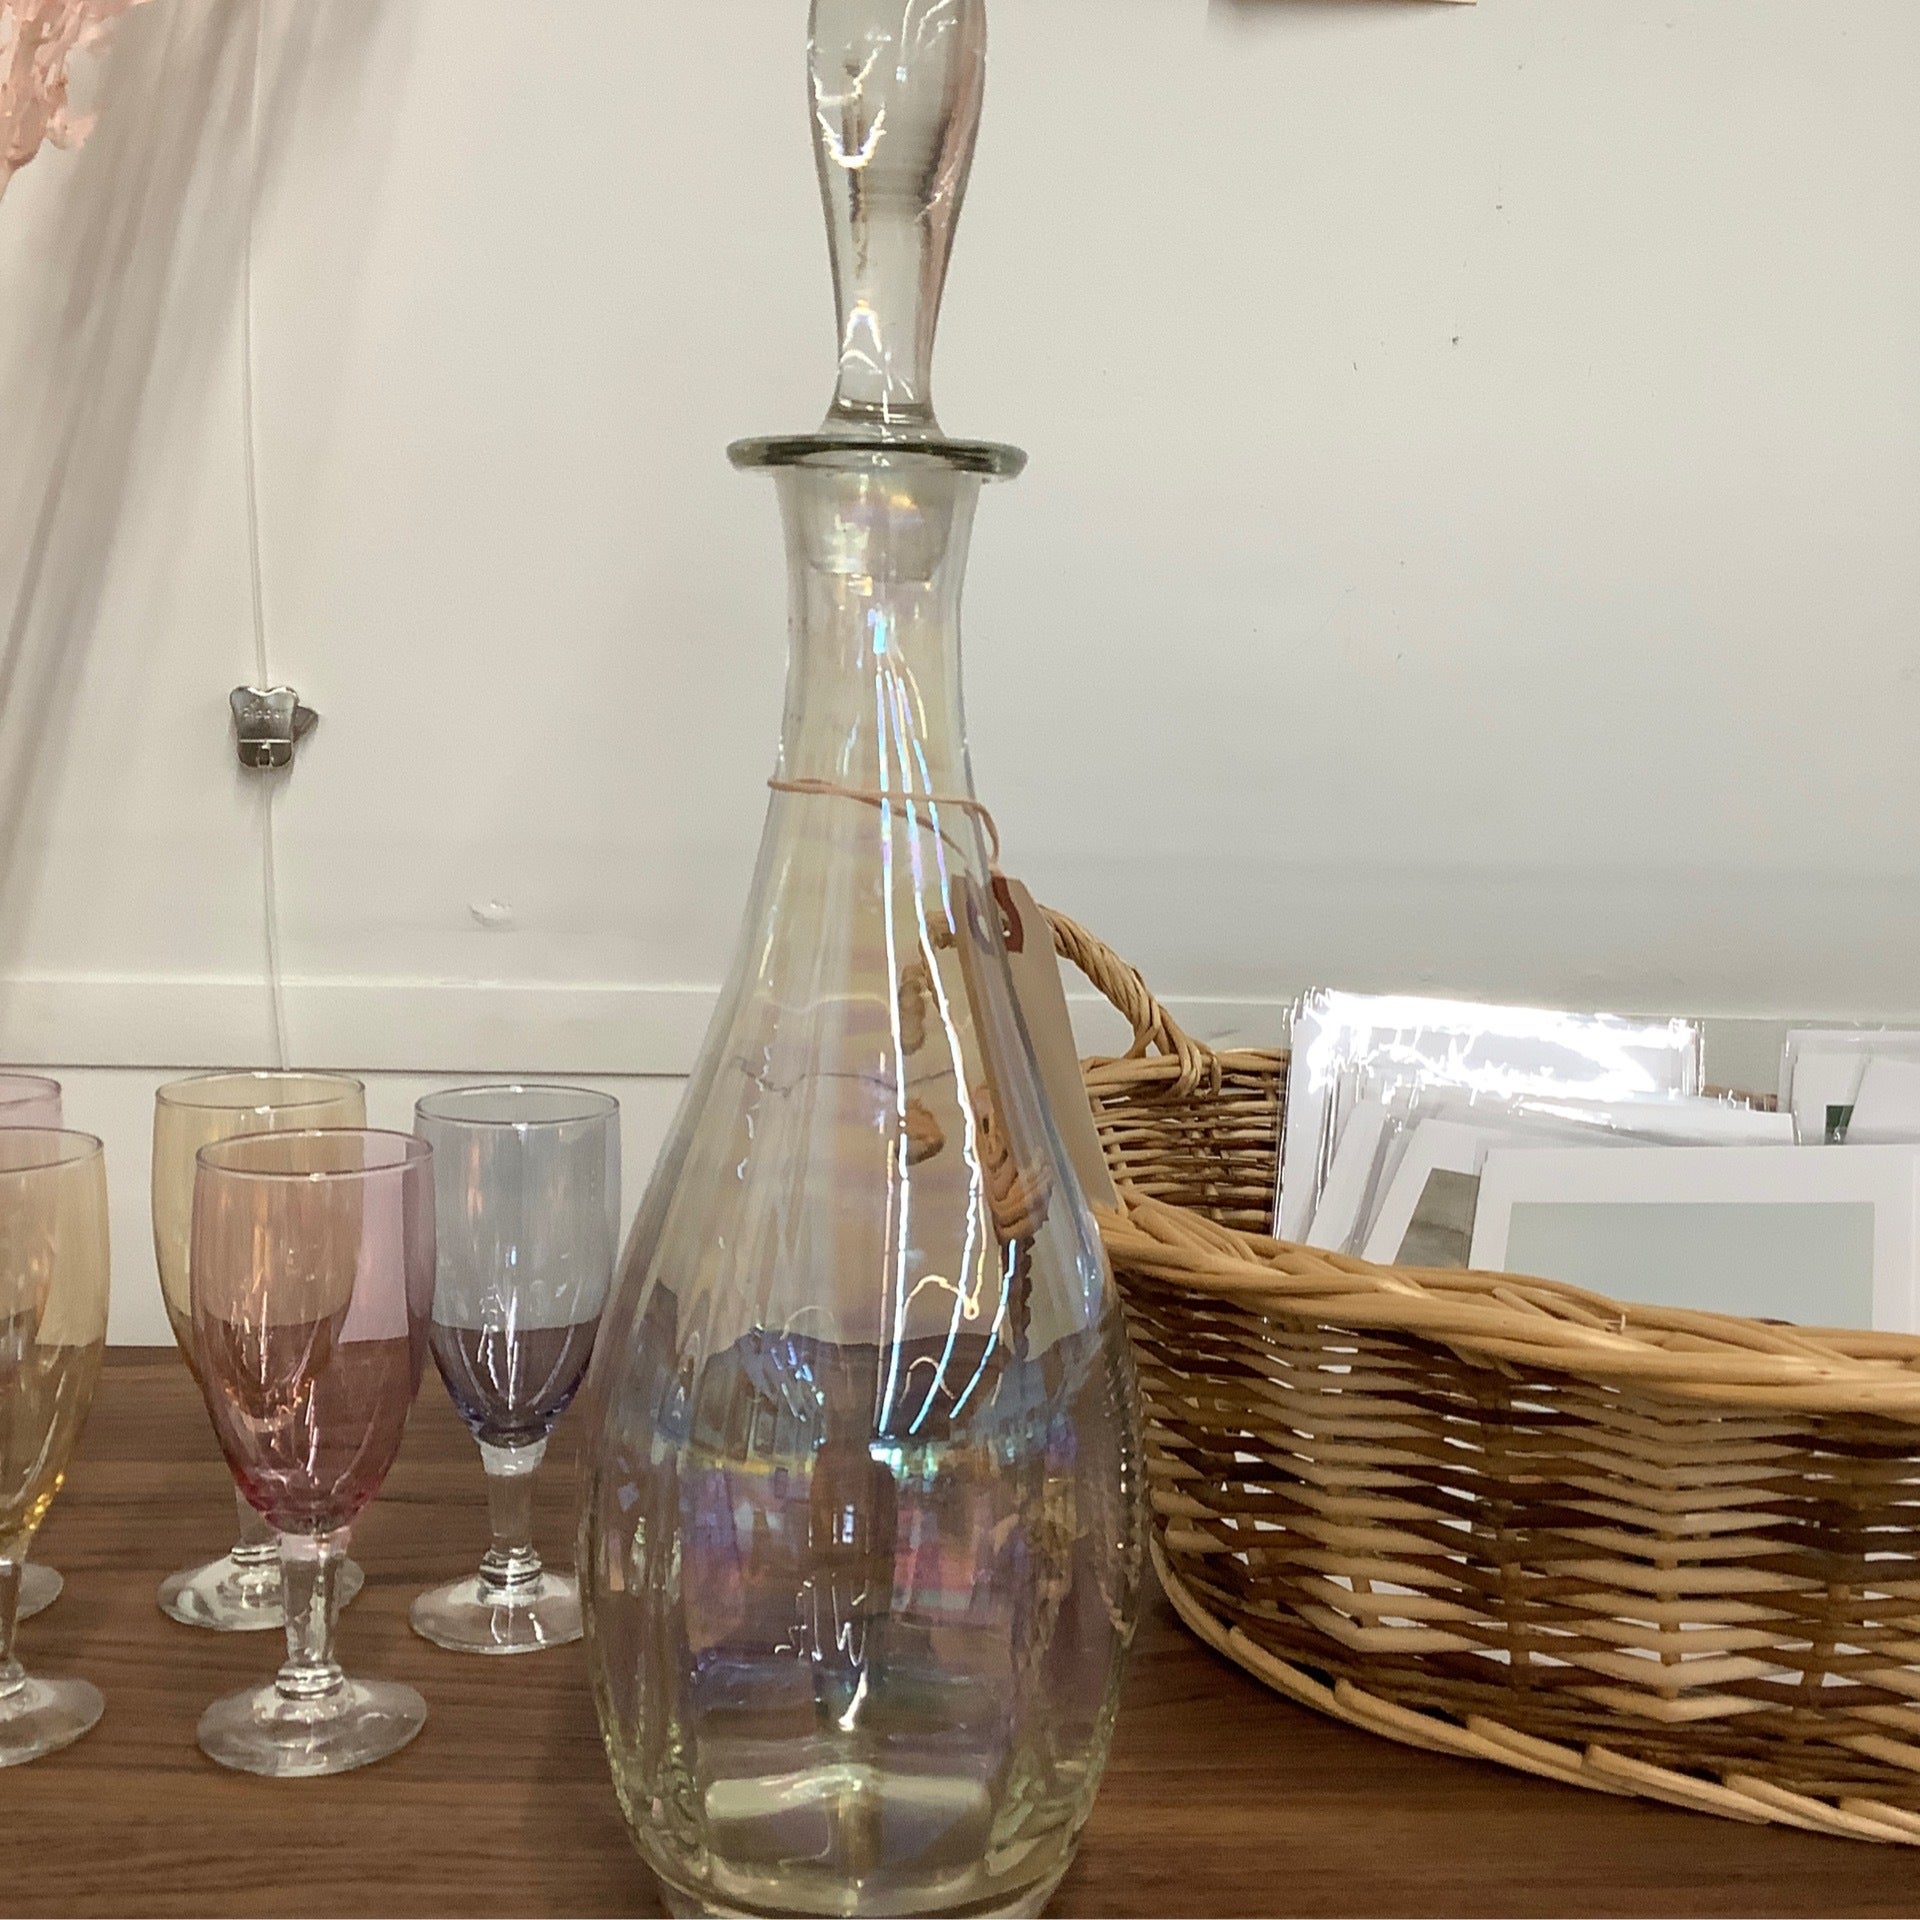 Fruttuoso Glassware Collection